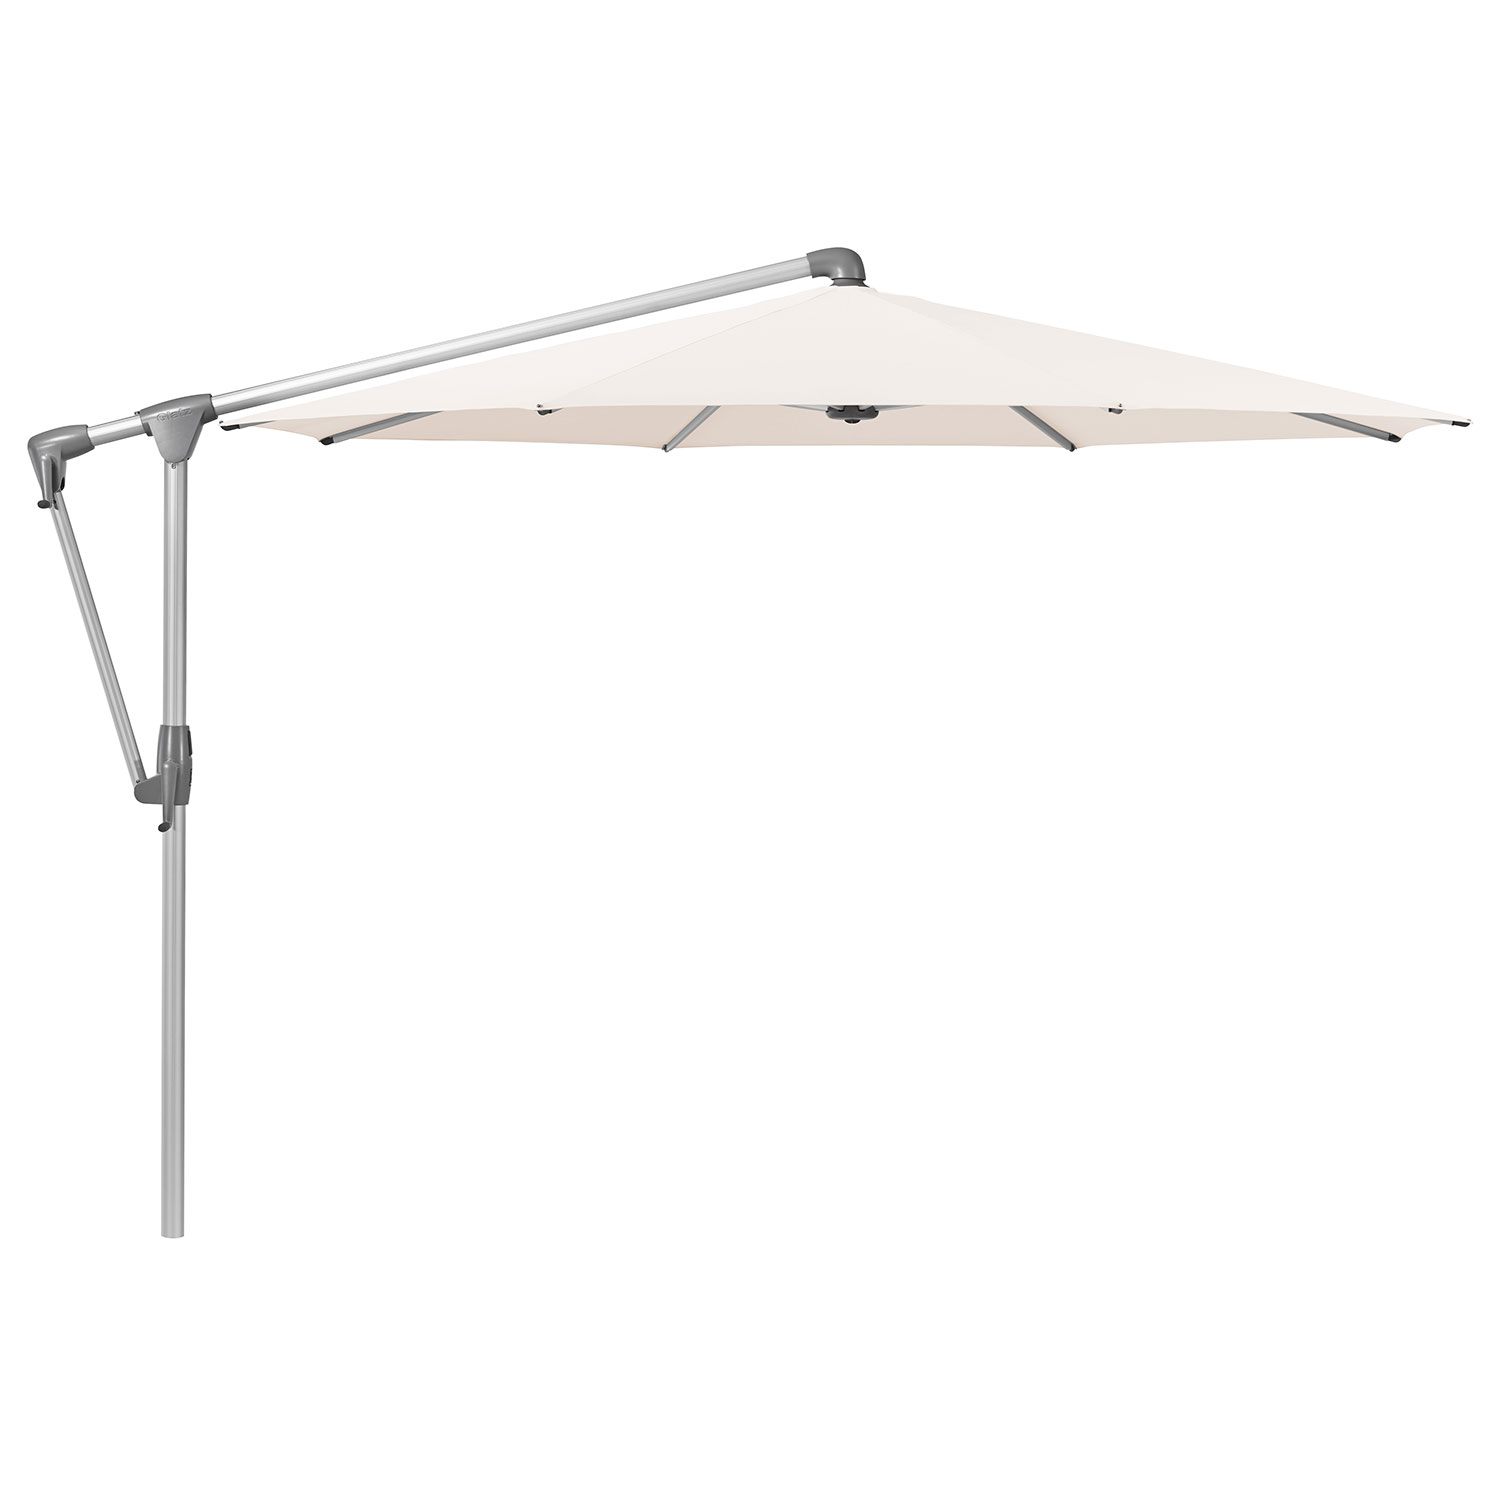 Sunwing Casa frihängande parasoll 300 cm kat.4 anodizerad alu / 453 vanilla Glatz